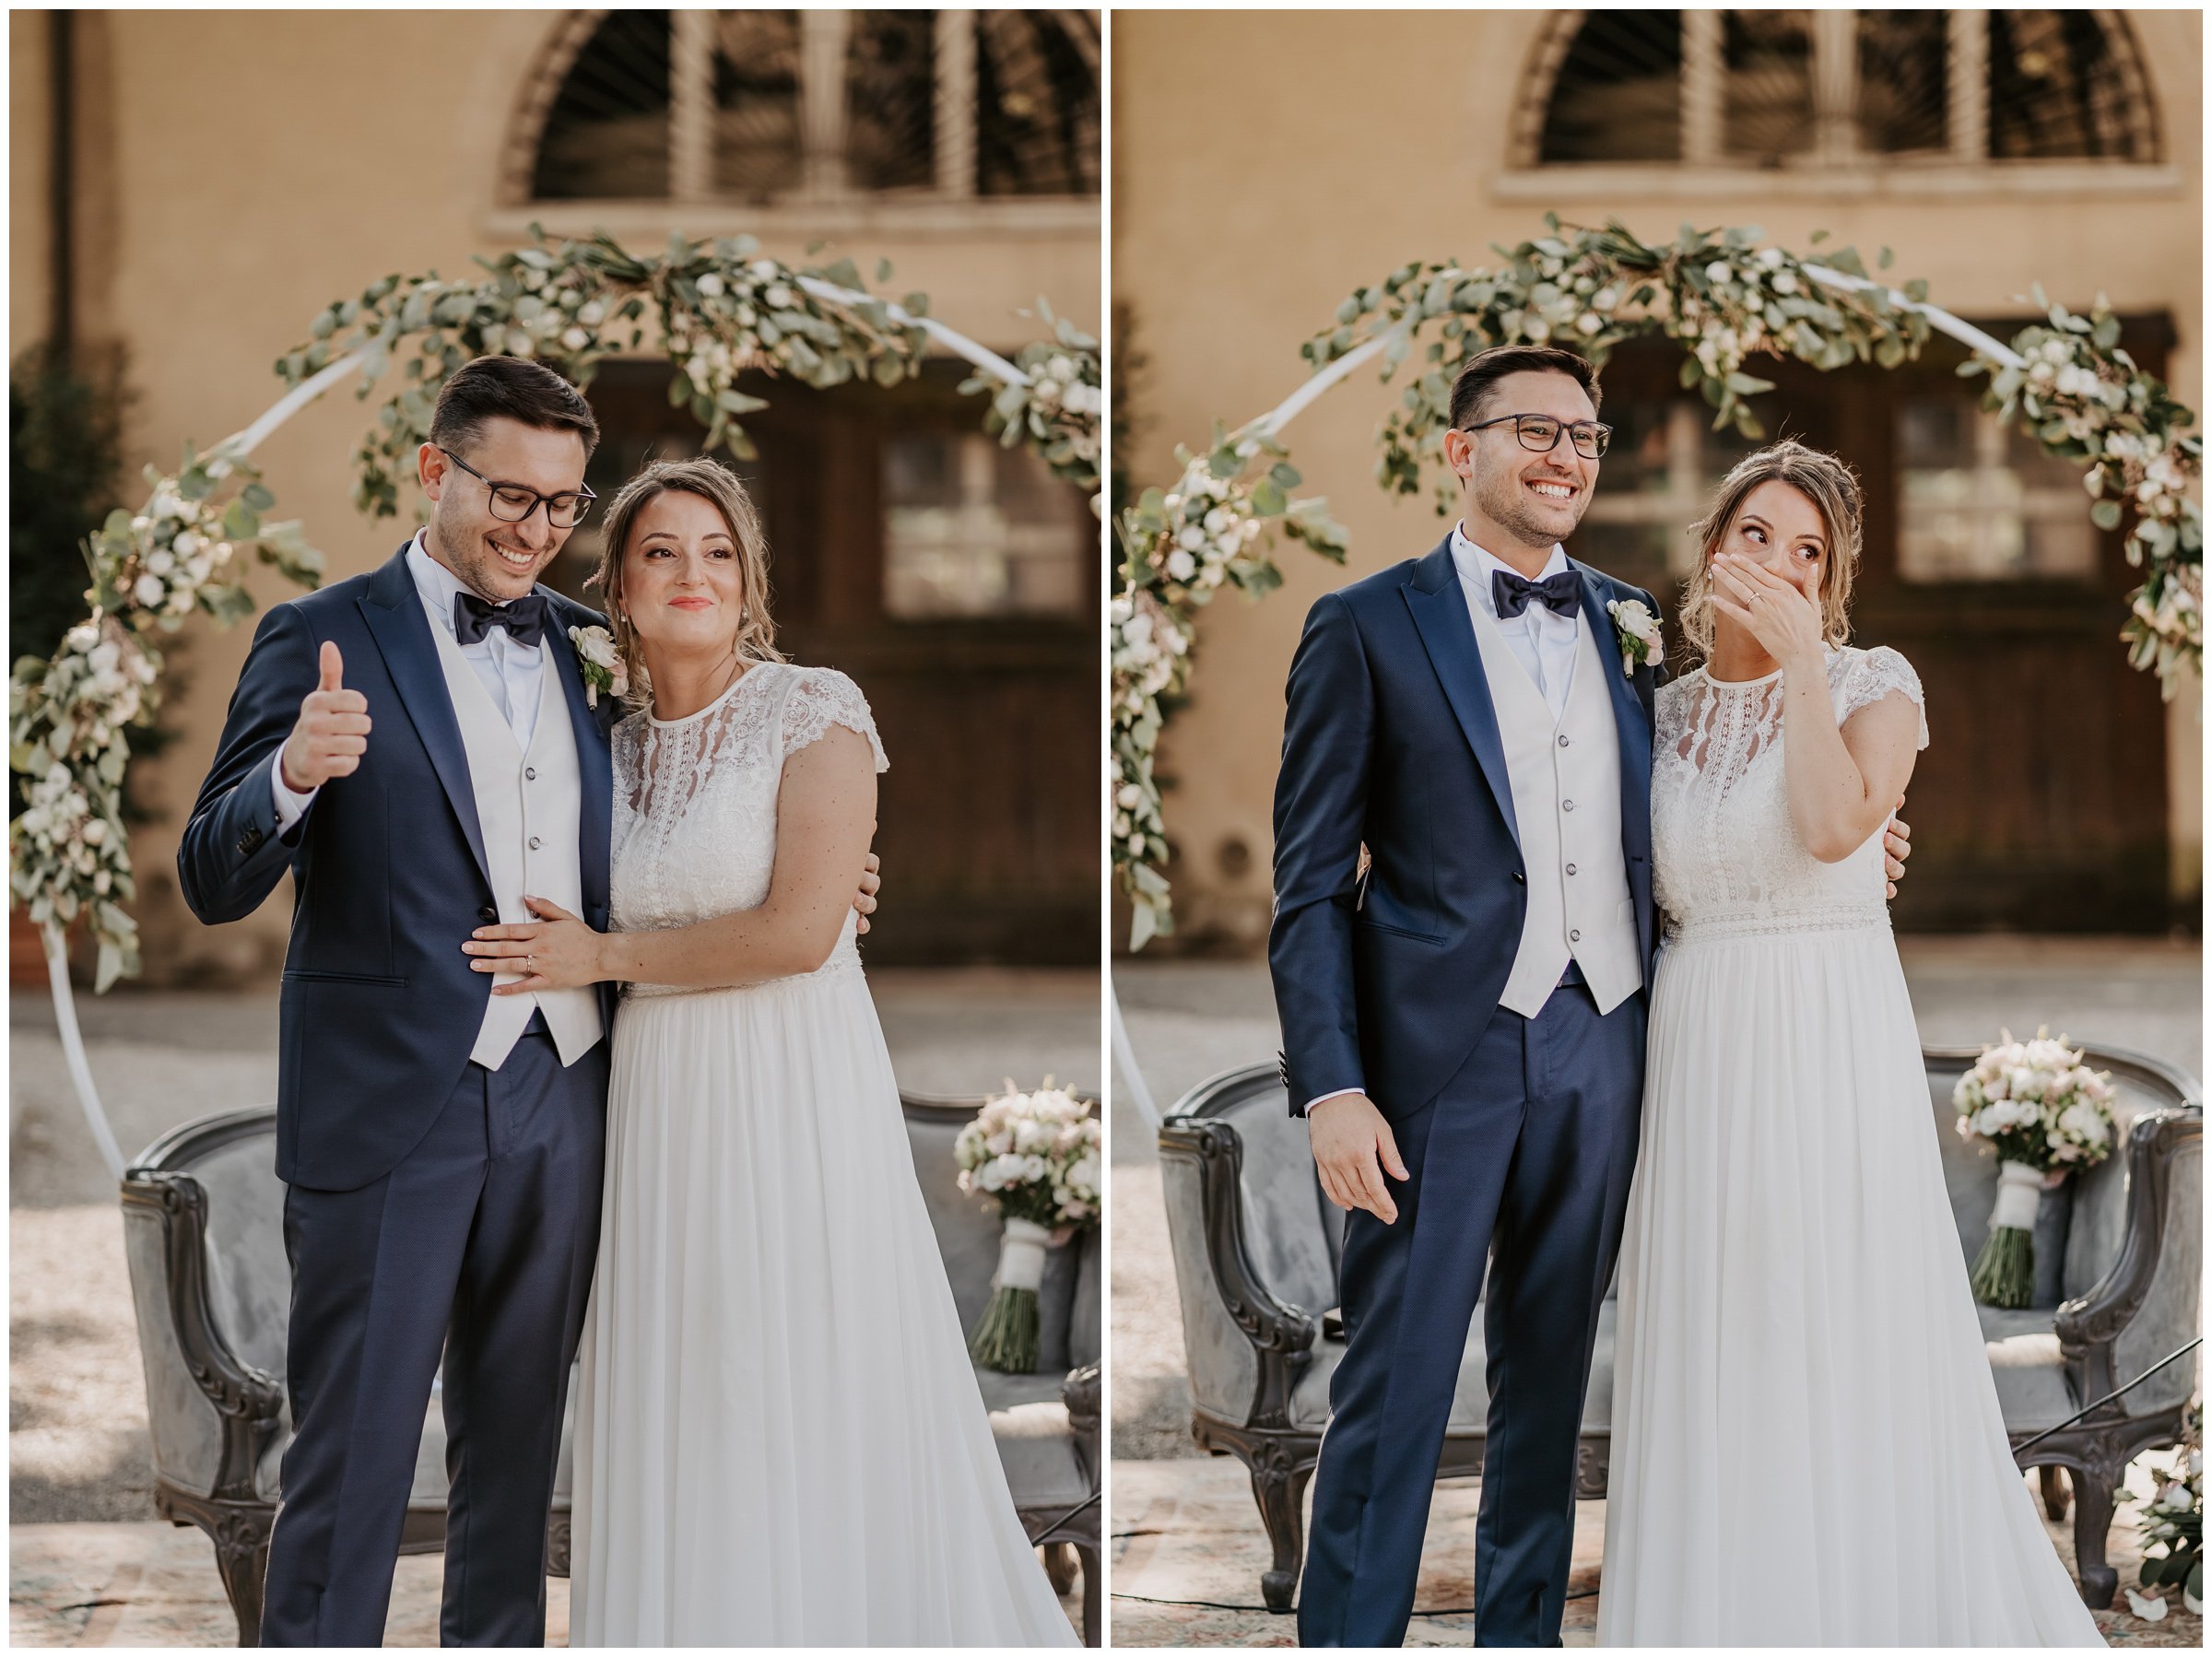 Matrimonio-villa-foscarini-cornaro-fotografo-matrimonio-treviso-fotografo-matrimonio-venezia-32.jpg